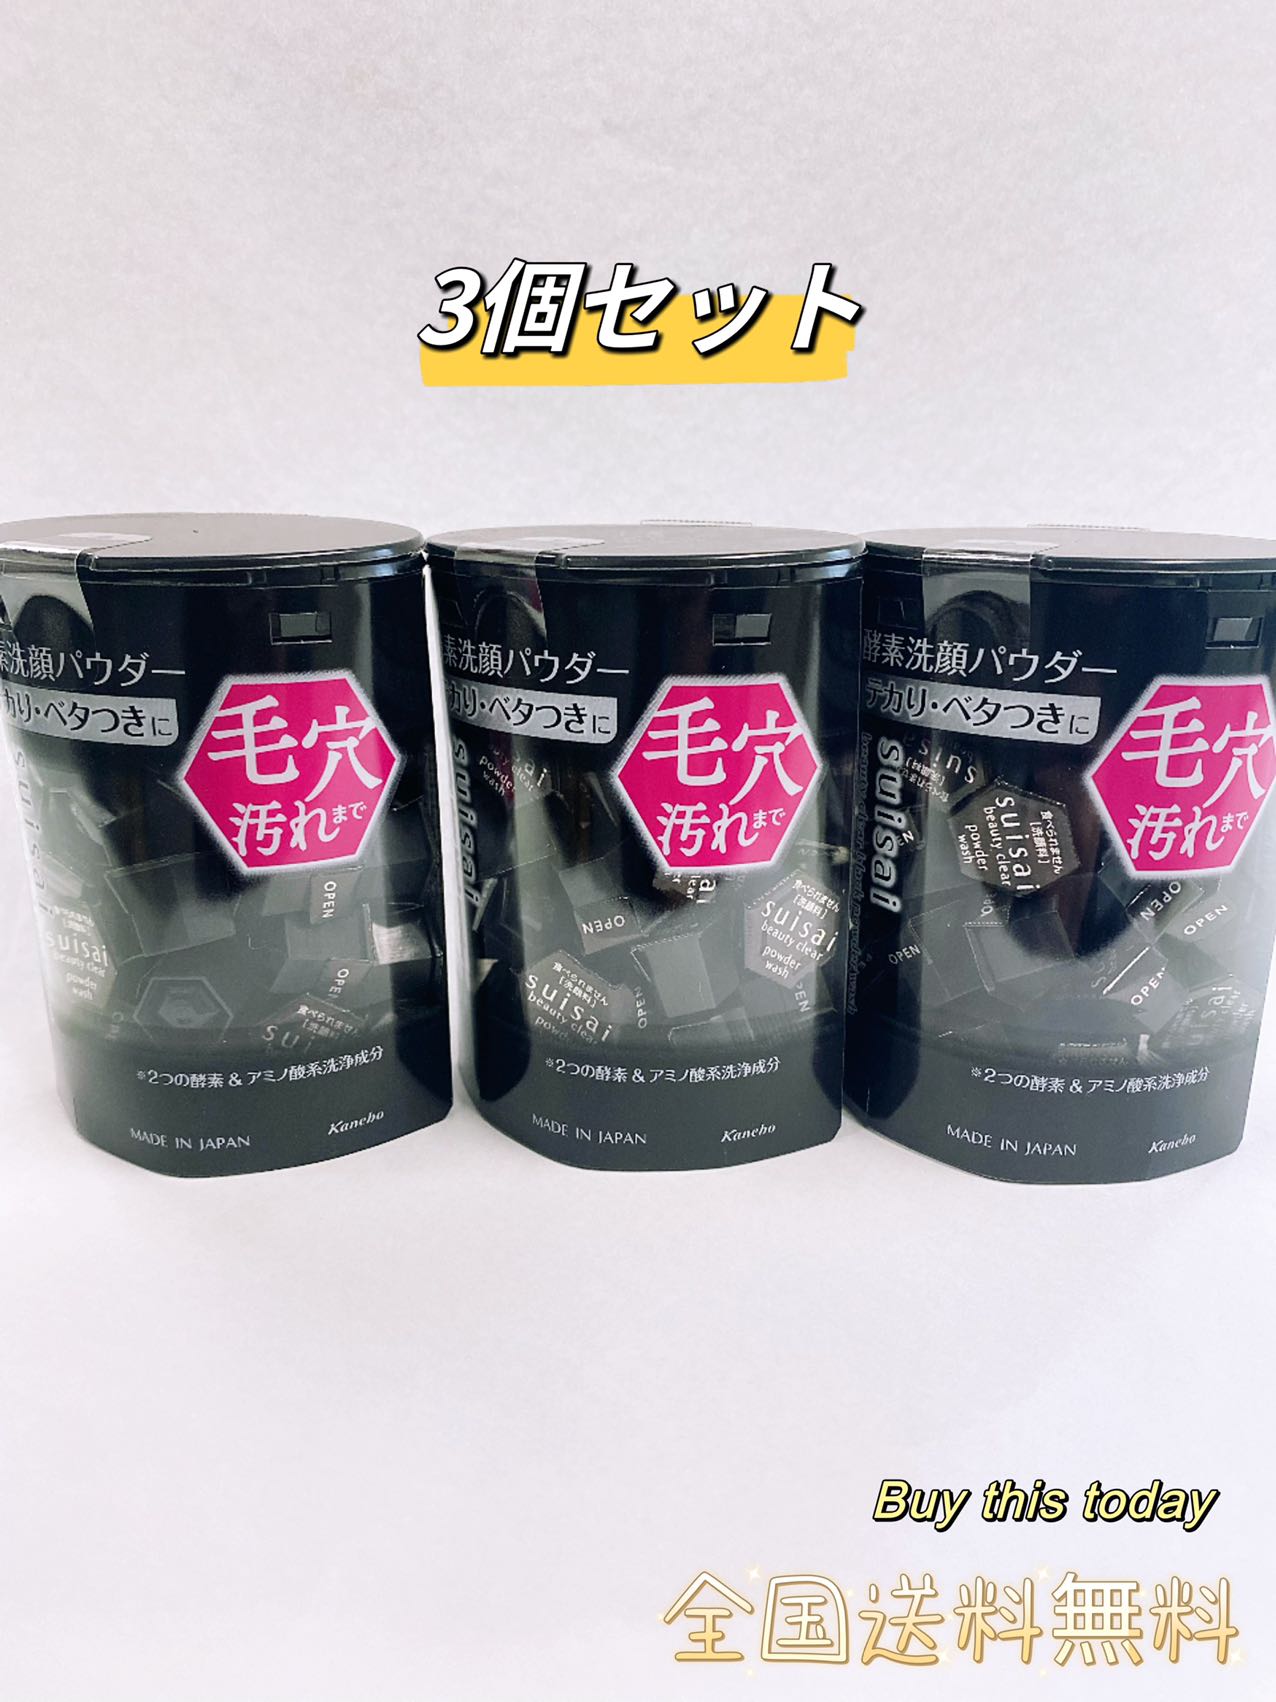 Kanebo suisai ビューティクリア ブラック パウダーウォッシュ 0.4g×32個×3 suisai 洗顔の商品画像